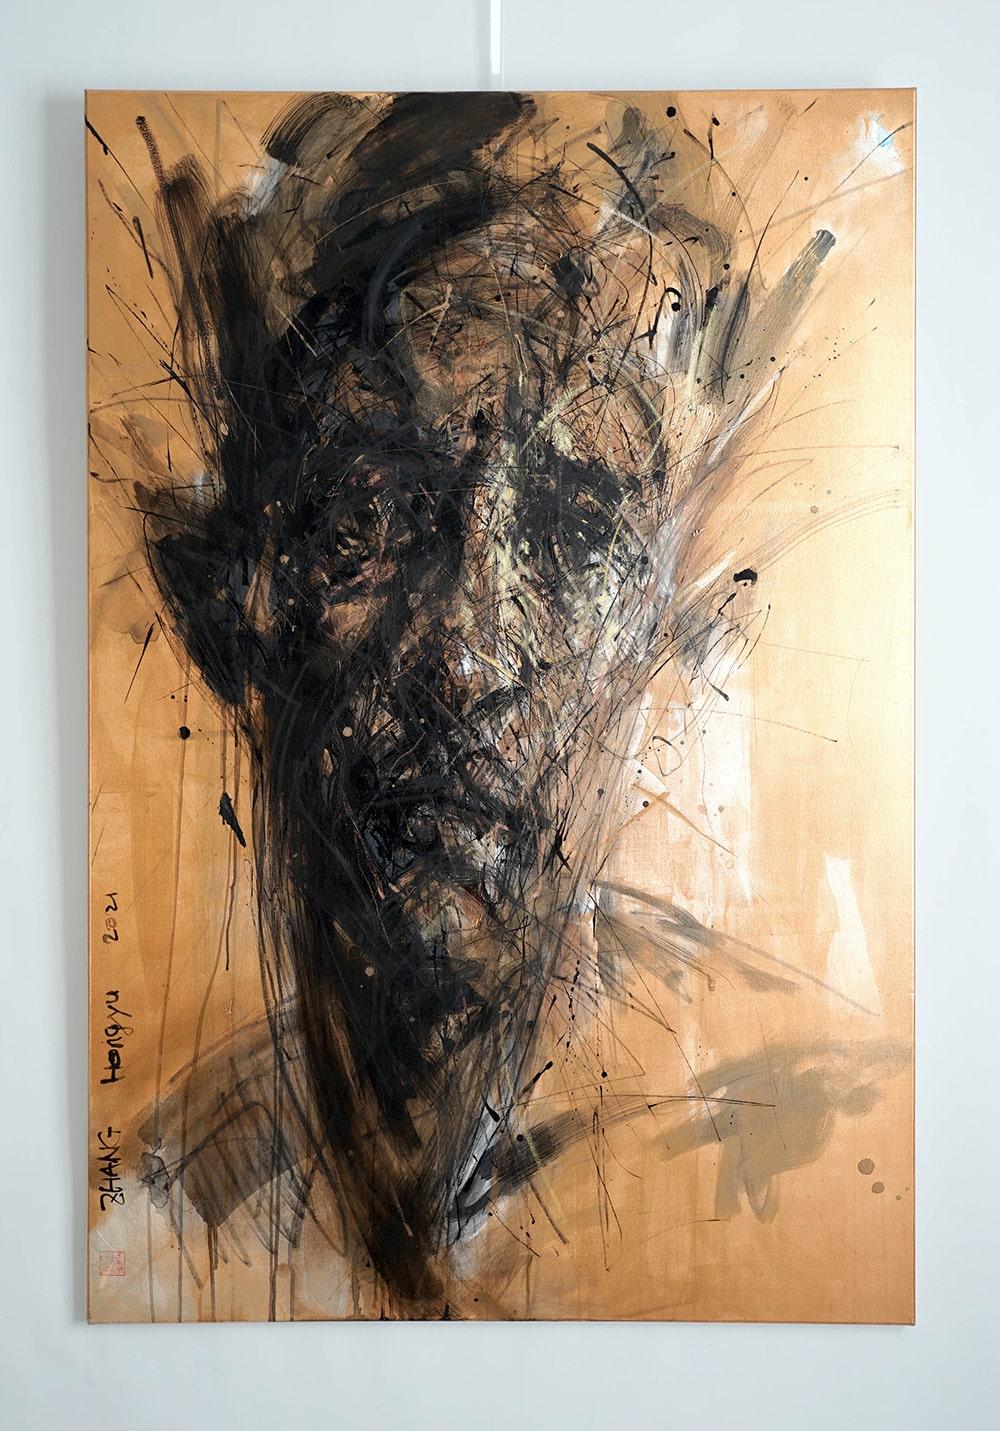 Nr. 200 ist ein einzigartiges Gemälde des zeitgenössischen Künstlers Hongyu Zhang. Das Gemälde ist mit Tusche, Kohle, Pastellkreide und Acryl auf Leinwand gemalt und hat die Maße 150 × 100 cm (59,1 × 39,4 in). 
Das Kunstwerk ist signiert, wird